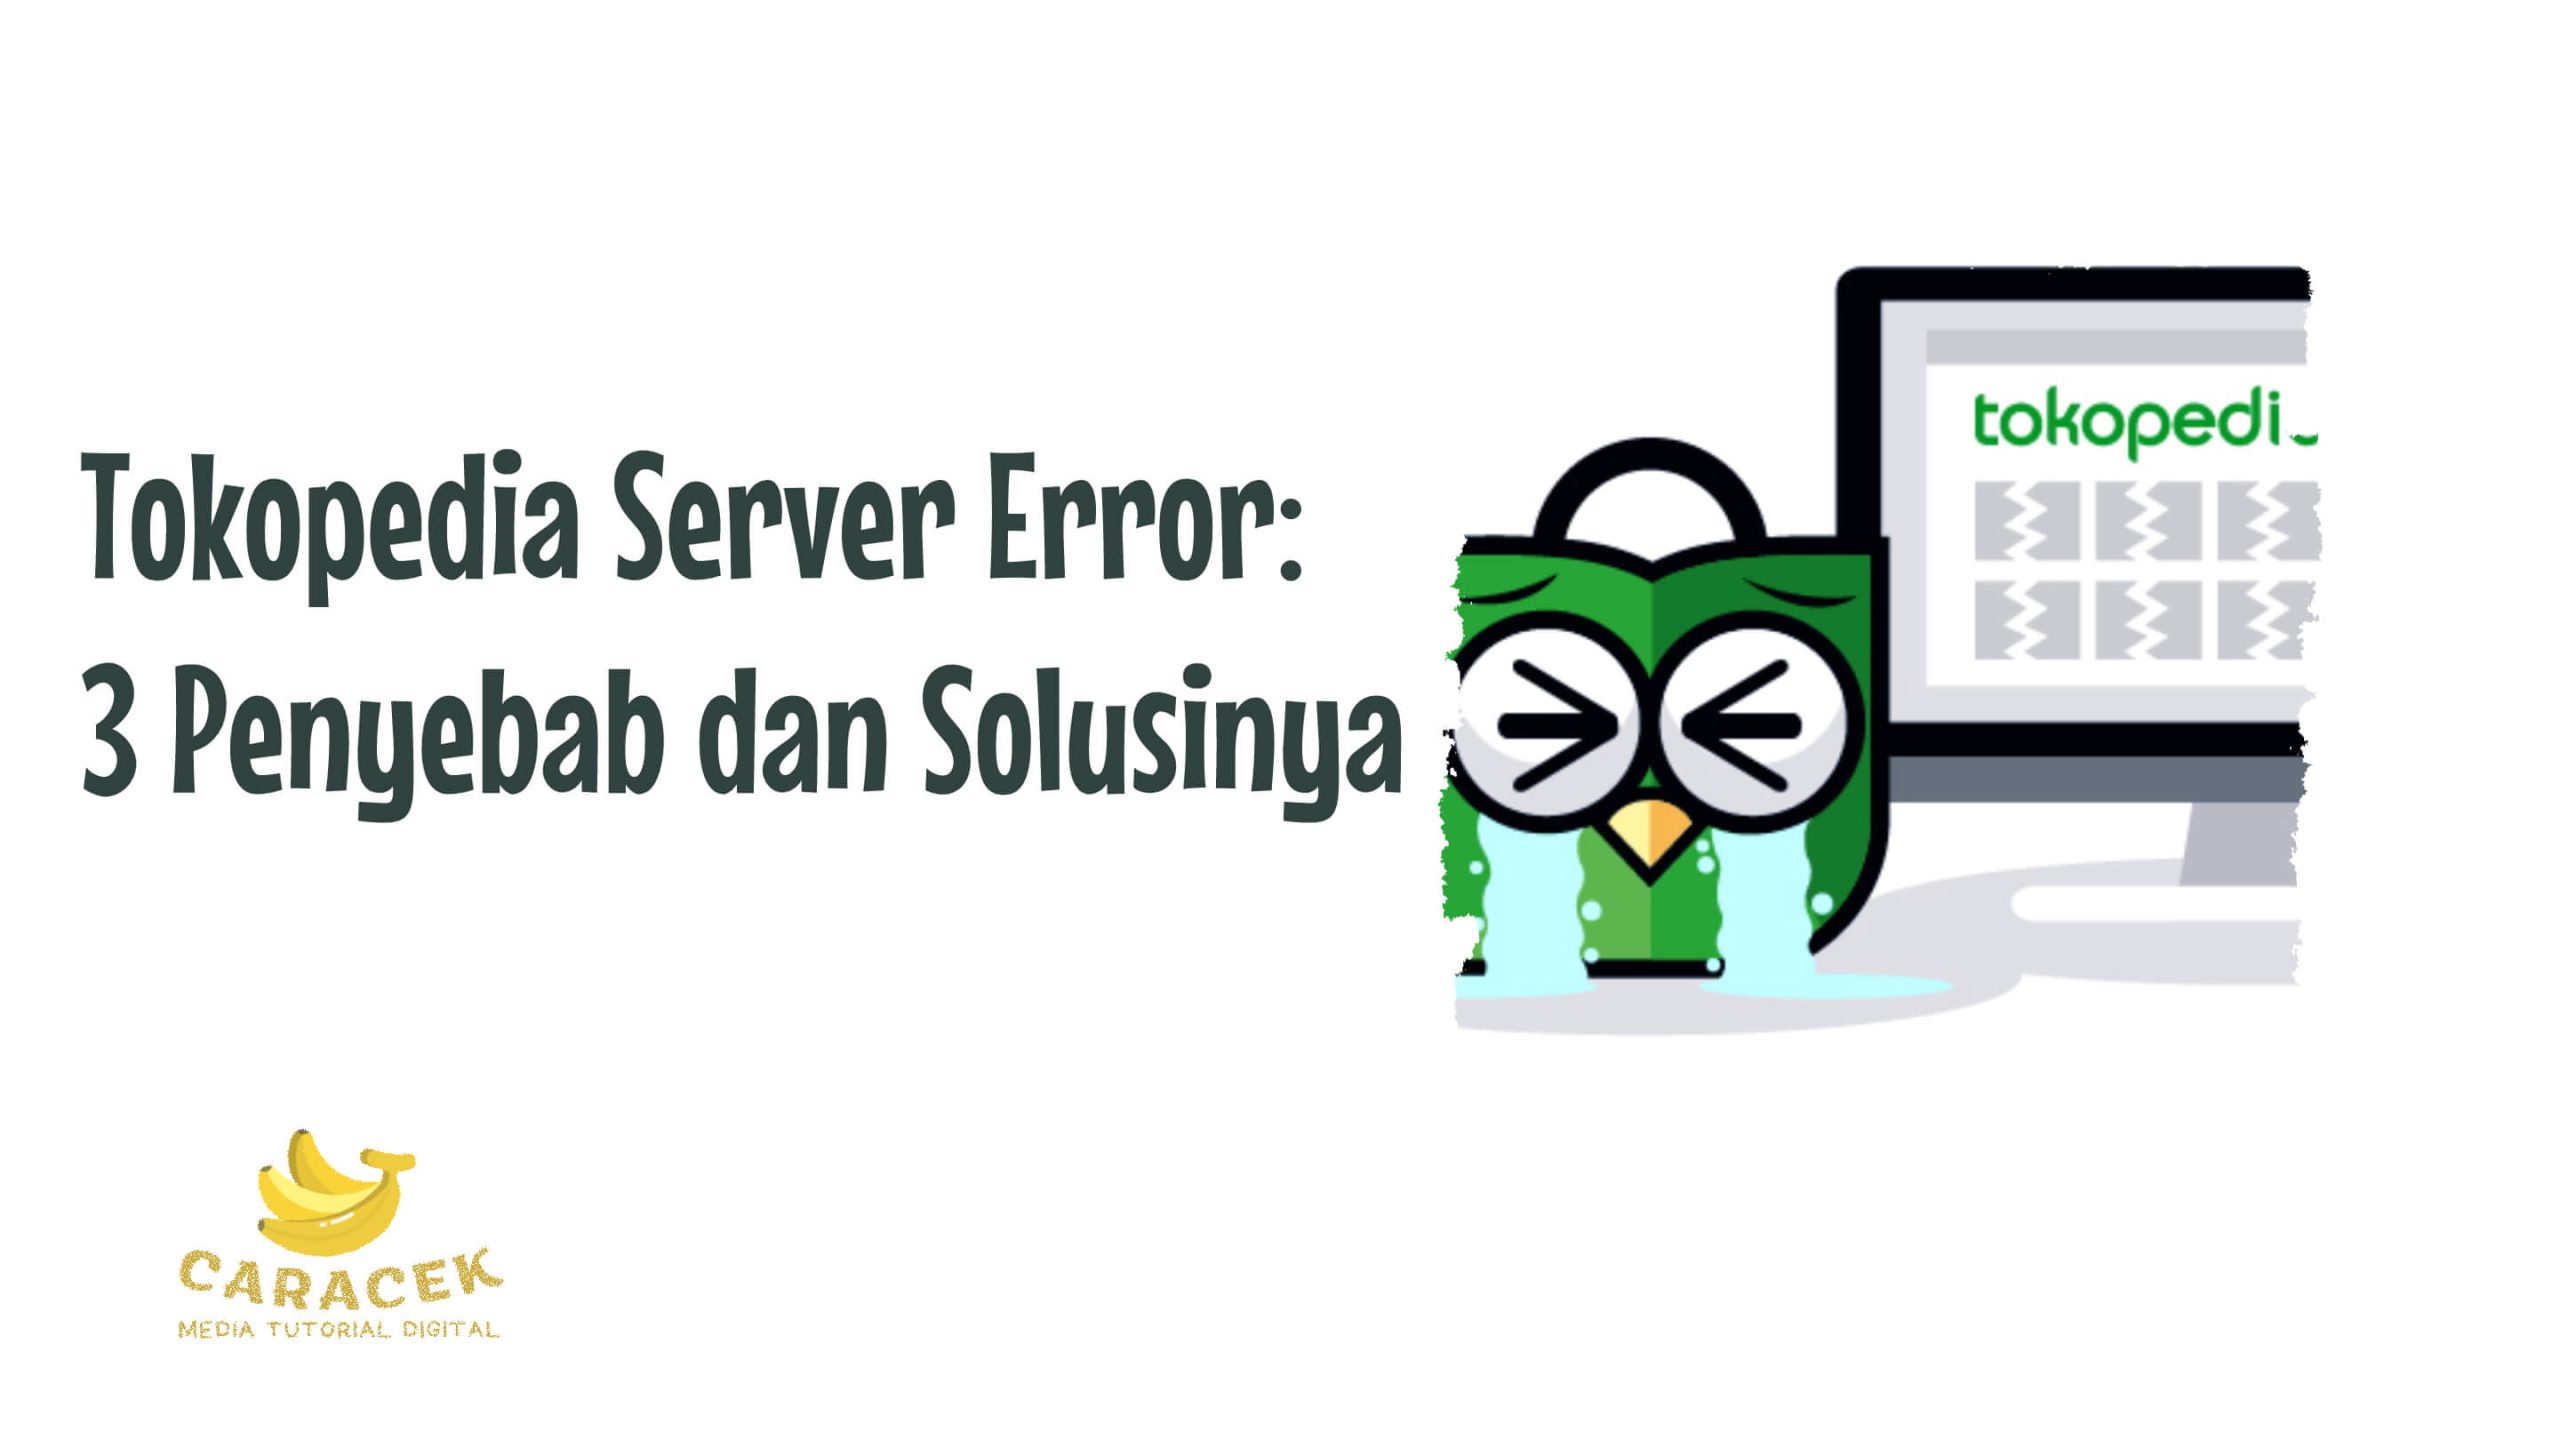 Tokopedia Server Error